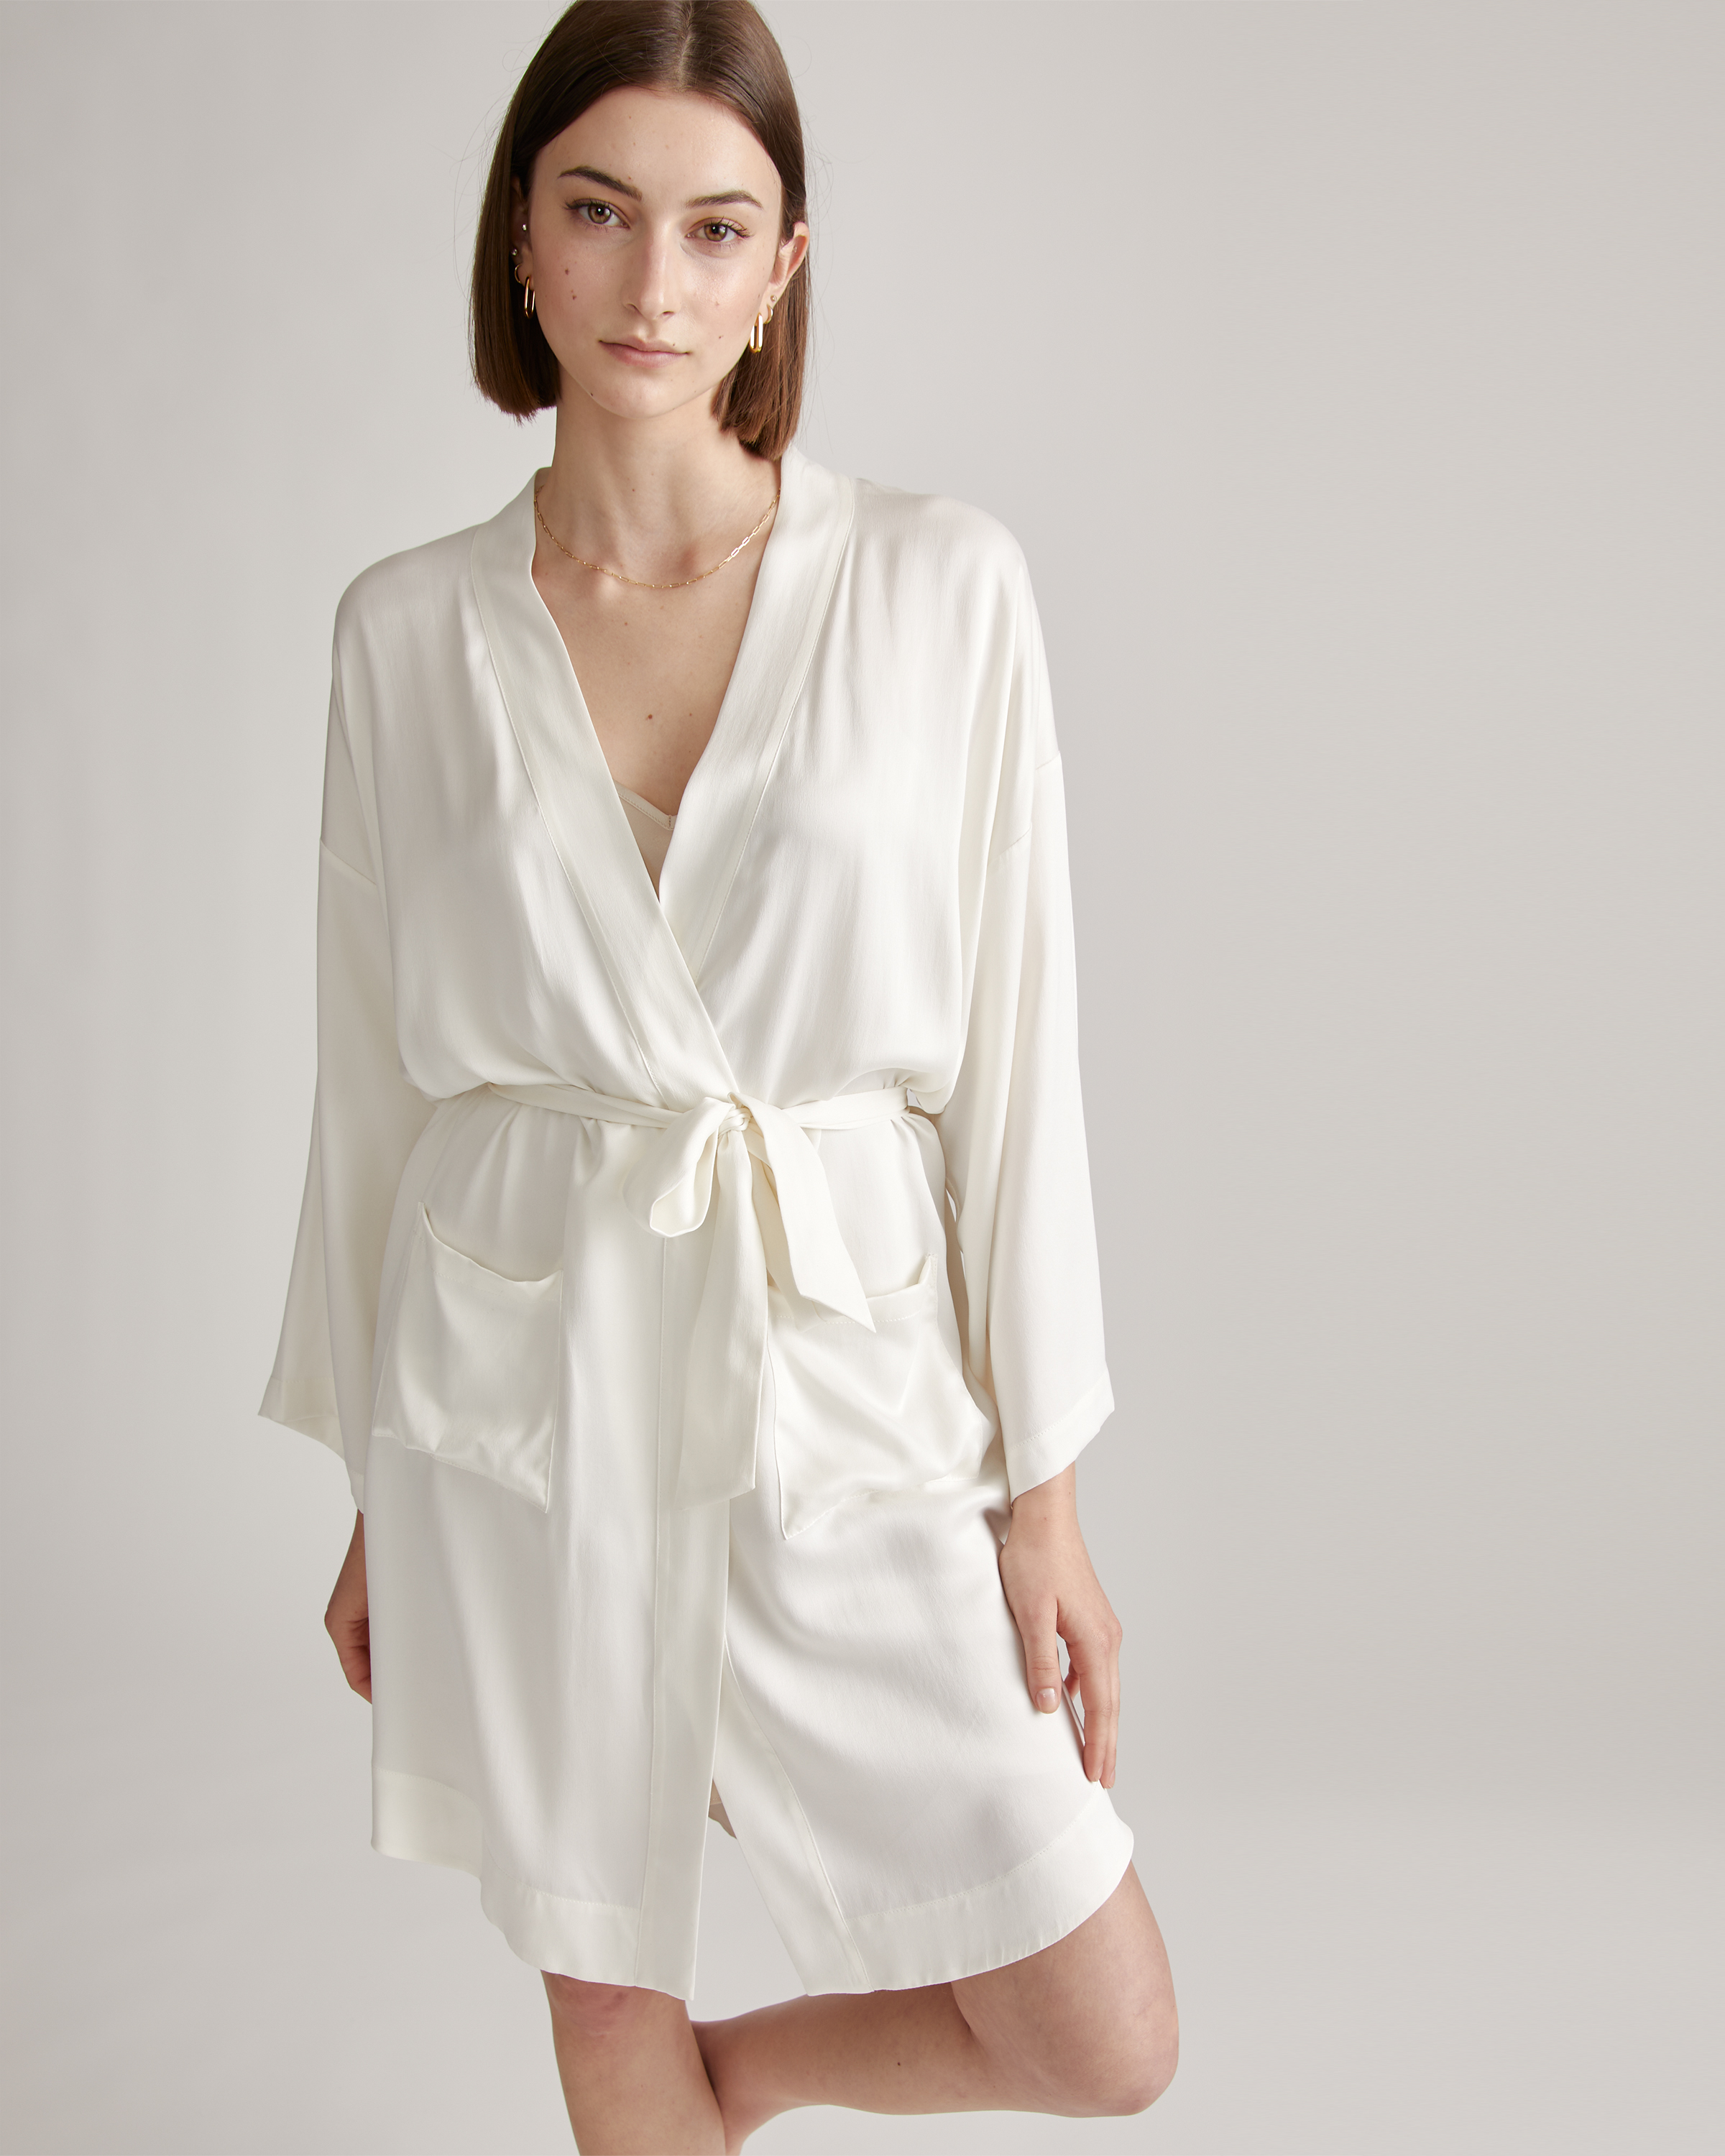 Victoria's Secret Short Cozy Robe, Women's Lingerie (XS-XXL)